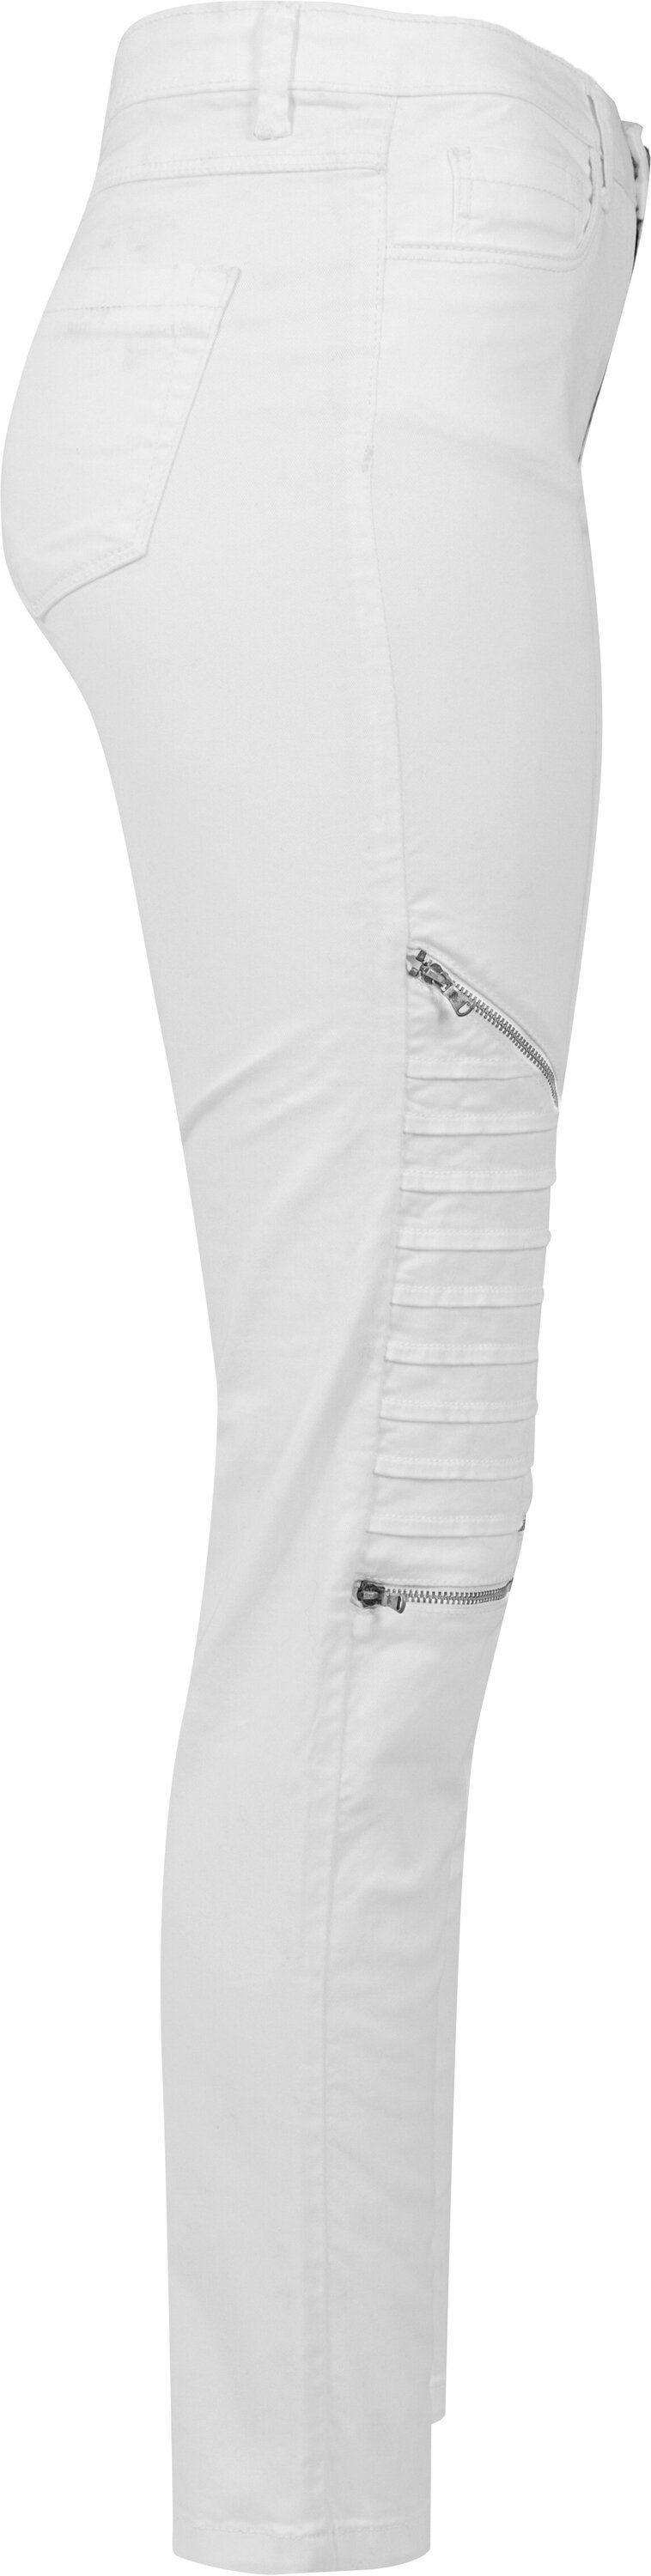 URBAN CLASSICS Bequeme (1-tlg) Stretch Jeans Damen Ladies white Pants Biker